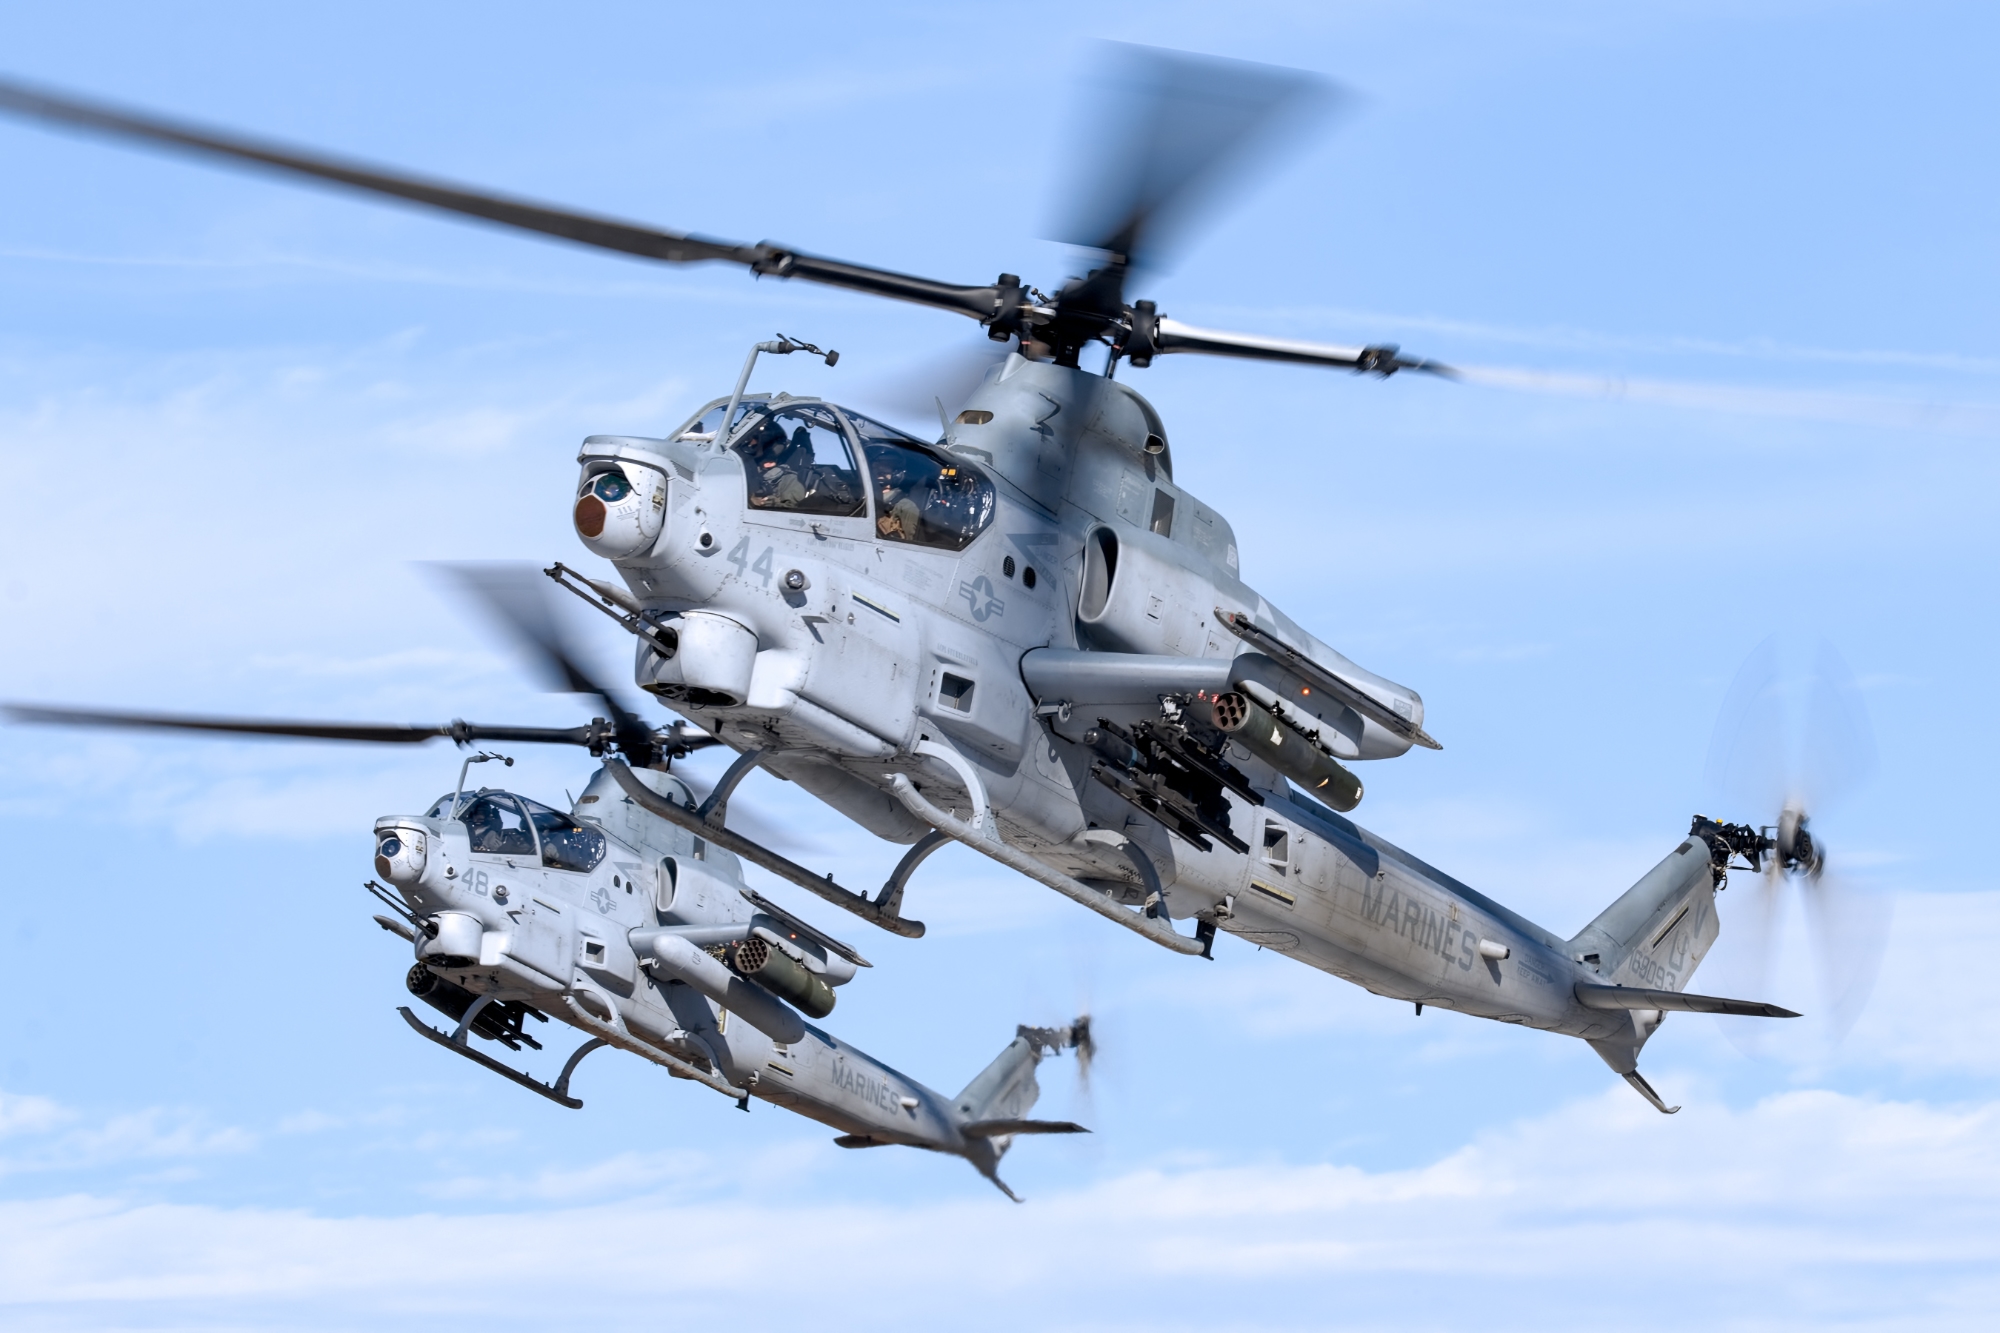 Kontrakt värt 455 miljoner USD: Nigeria köper 12 AH-1Z Viper attackhelikoptrar från Bell